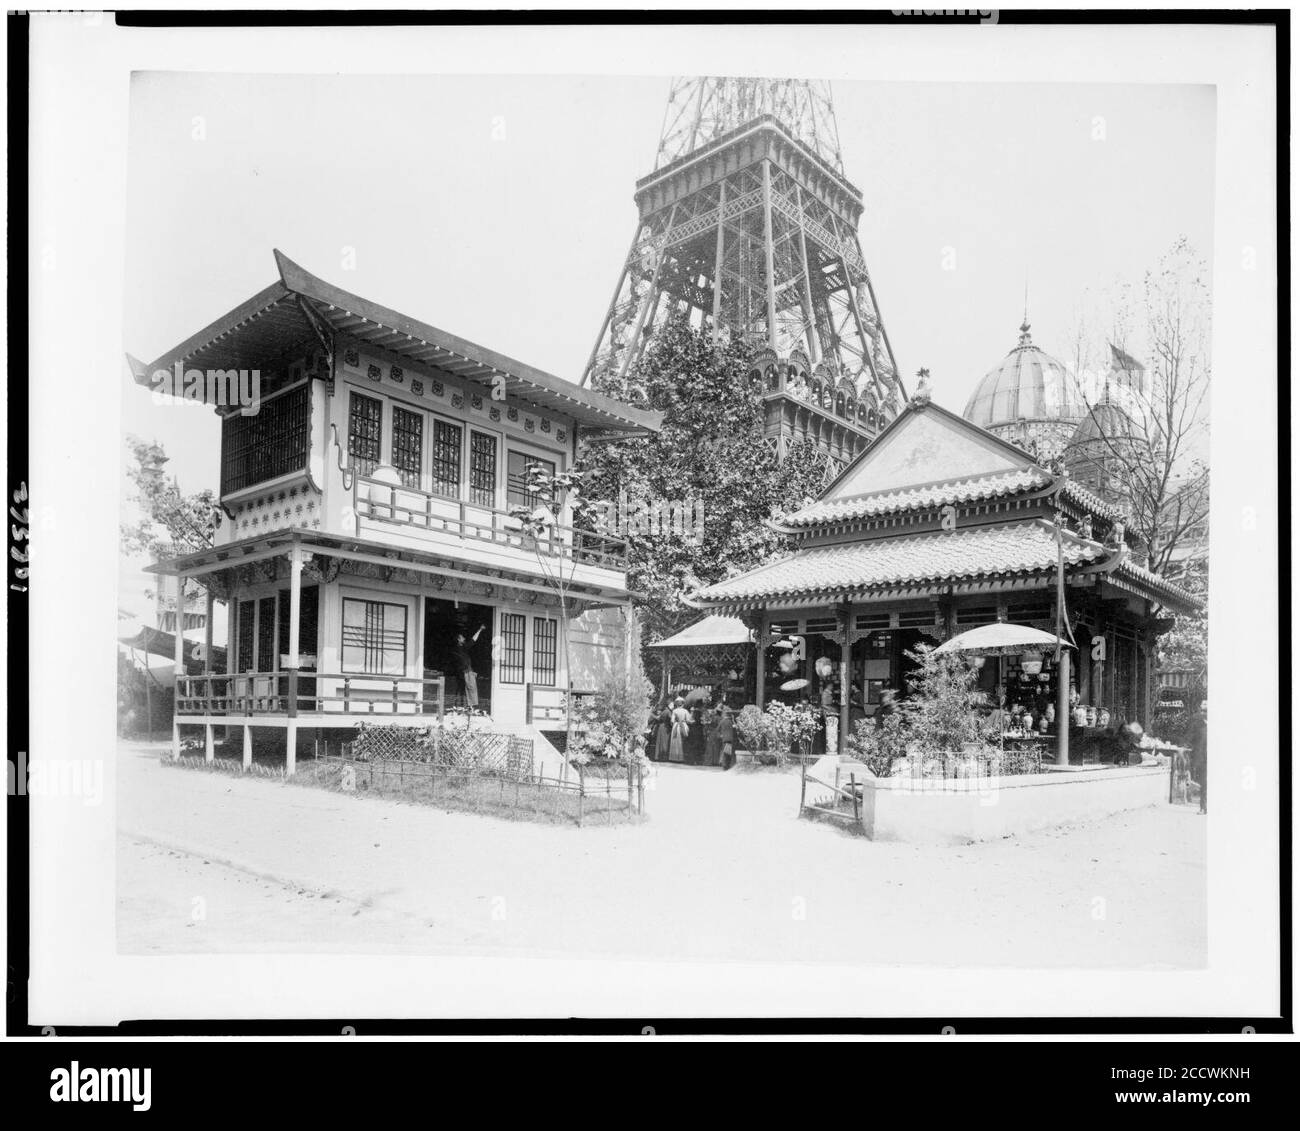 Japanische Haus, Links, und Chinesischen Haus, rechts, in der Geschichte der Besiedlung aufweisen, Paris Exposition, 1889 Stockfoto